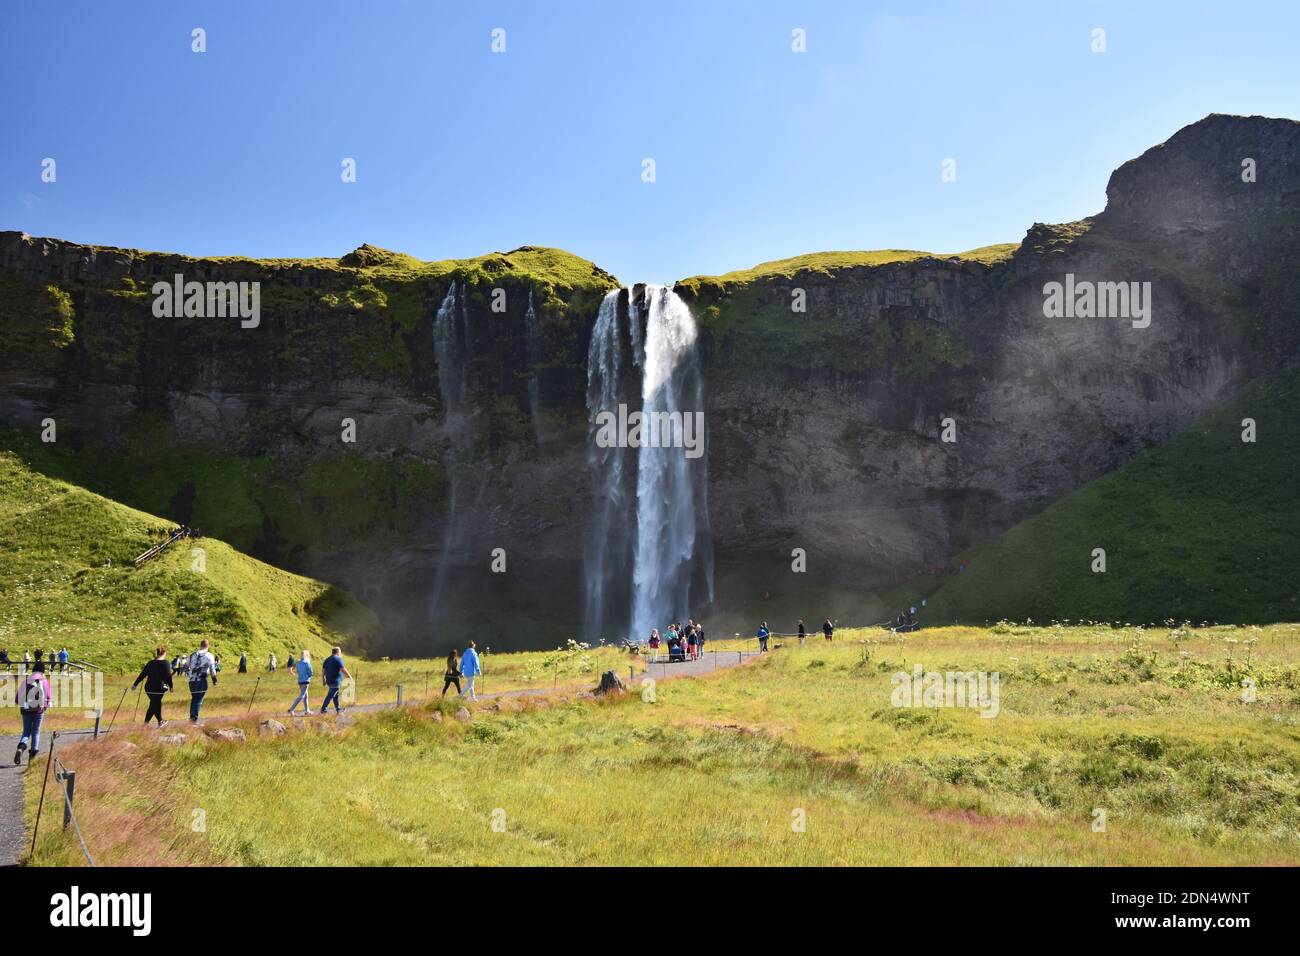 Besucher wandern auf einem Pfad durch Felder, die zu einer Klippe und dem Wasserfall Seljalandsfoss in Südisland führen, gleich neben der Ringstraße. Stockfoto